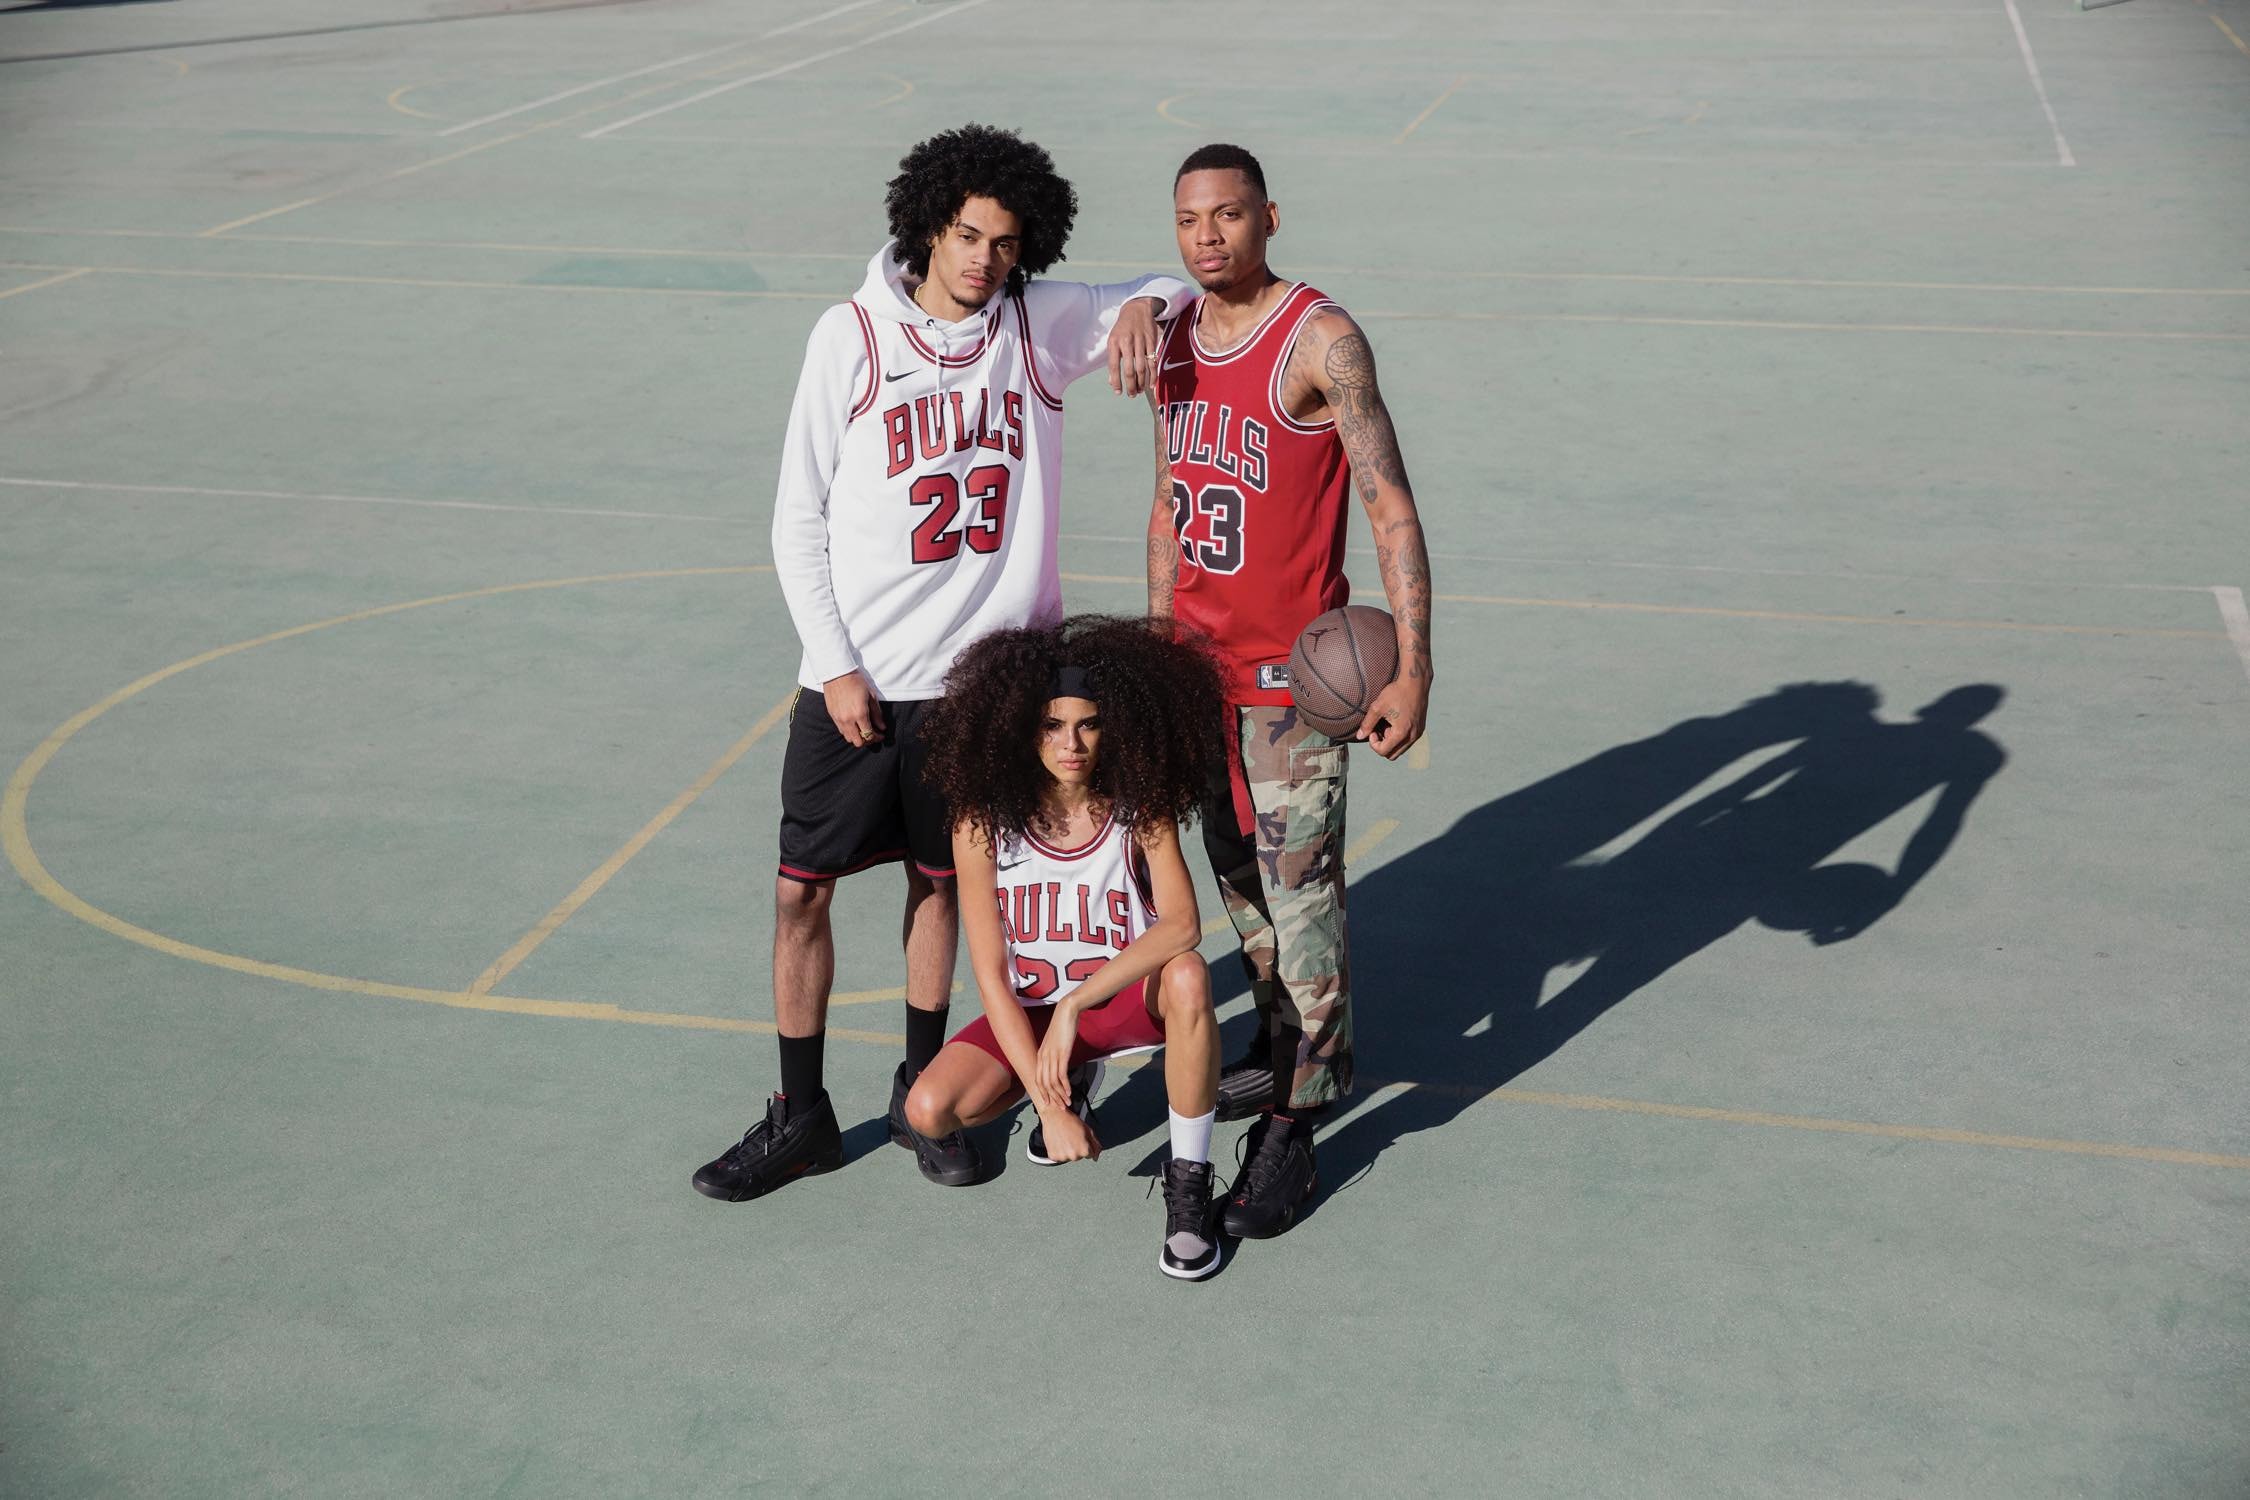 Nike がシカゴ・ブルズ時代のマイケル・ジョーダンのユニフォームを復刻 「Netflix」で公開されるバスケットボールの神様の最新ドキュメンタリーにフックしたMJファン垂涎のブルズジャージ 「ESPN 」と「Netflix」によるMichael Jordan（マイケル・ジョーダン）のドキュメンタリー制作発表に引き続き、〈Nike（ナイキ）〉が同作『The Last Dance（原題）』のリリースを記念して、シカゴ・ブルズ時代のMJのジャージを復刻するようだ。このMJファン垂涎のアイテムはNBA公認ジャージにも組み込まれているICチップ、NikeConnectを搭載し、2019年公開予定の『The Last Dance』をいち早く視聴できる仕様に。発売時期は明かされていないが、価格は特別な包装が施されたAuthenticが400ドル（約44,000円）で、ホーム＆アウェイ展開となるSwingmanが各120ドル（約13,000円）となる見込みだ。  ちなみに、Tinker Hatfield（ティンカー・ハットフィールド）がJordanの55歳の誕生日に贈ったプレゼントは何かご存知？ HYPEBEAST